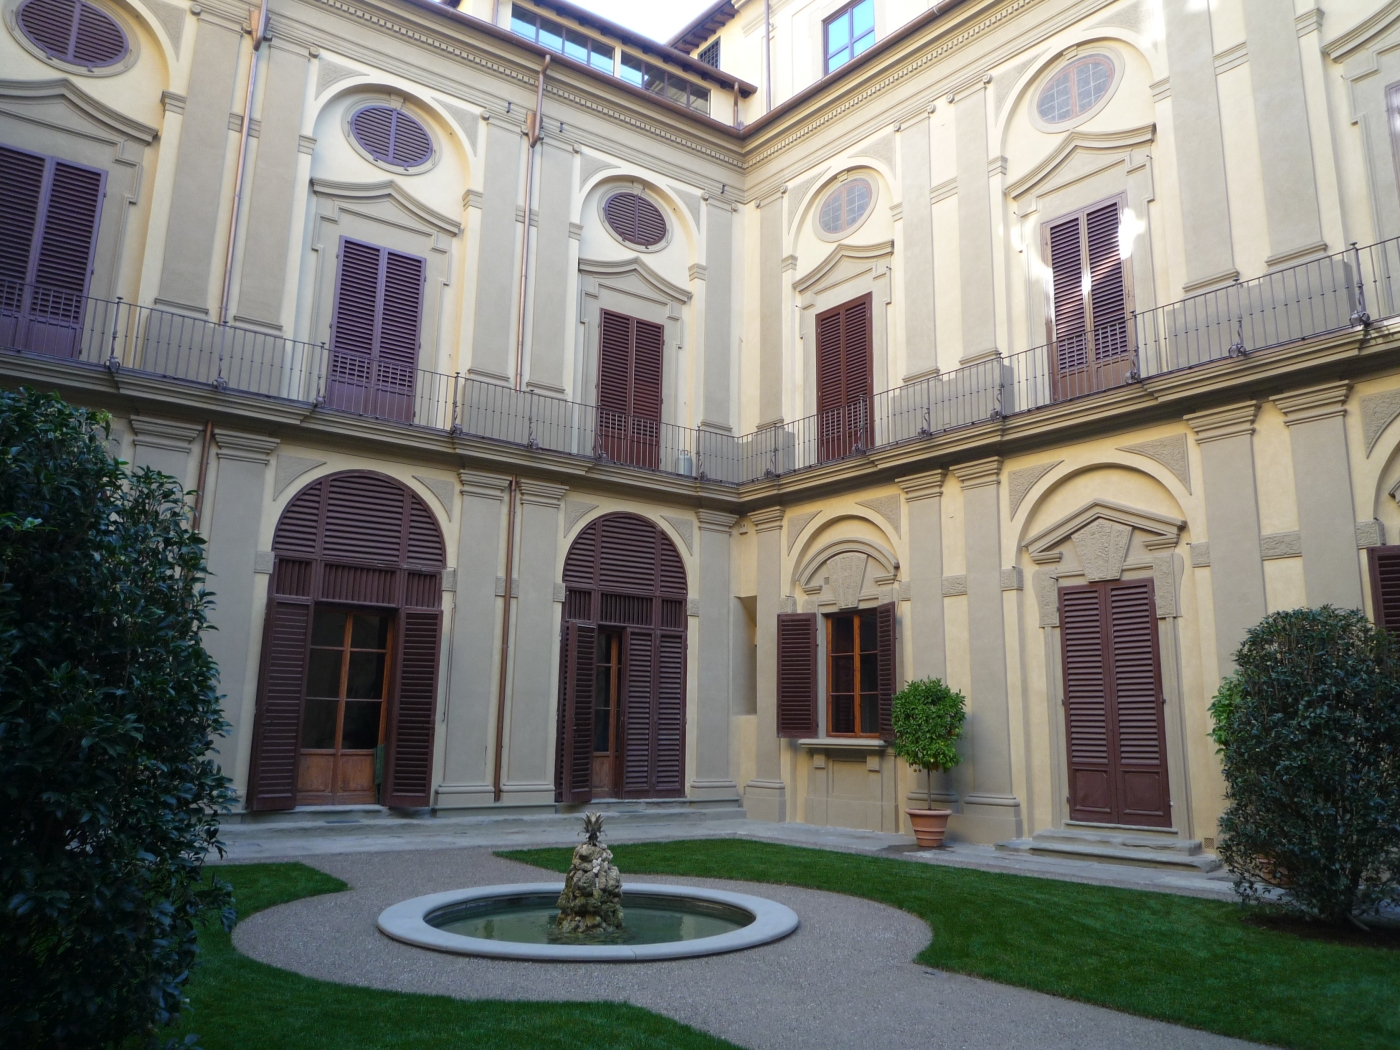 Palazzo fiorentino